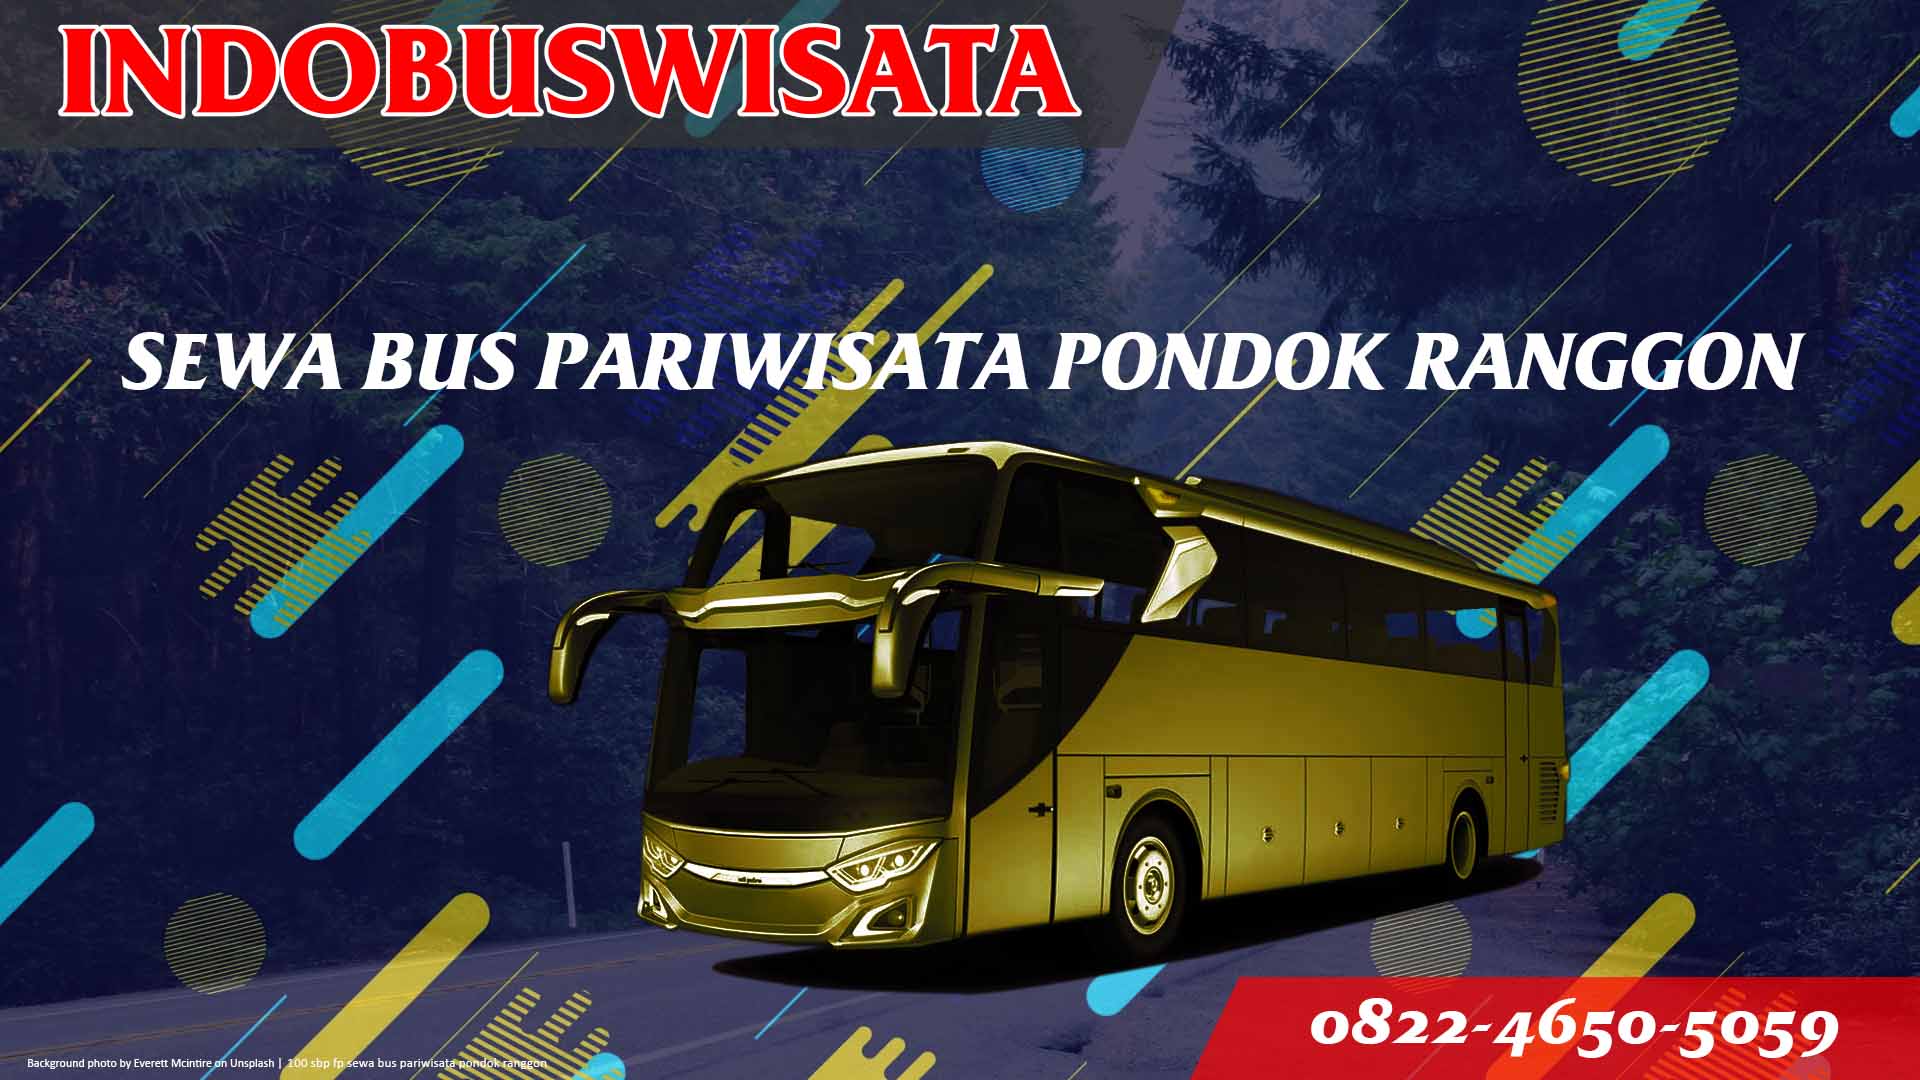 100 Sbp Fp Sewa Bus Pariwisata Pondok Ranggon Indobuswisata